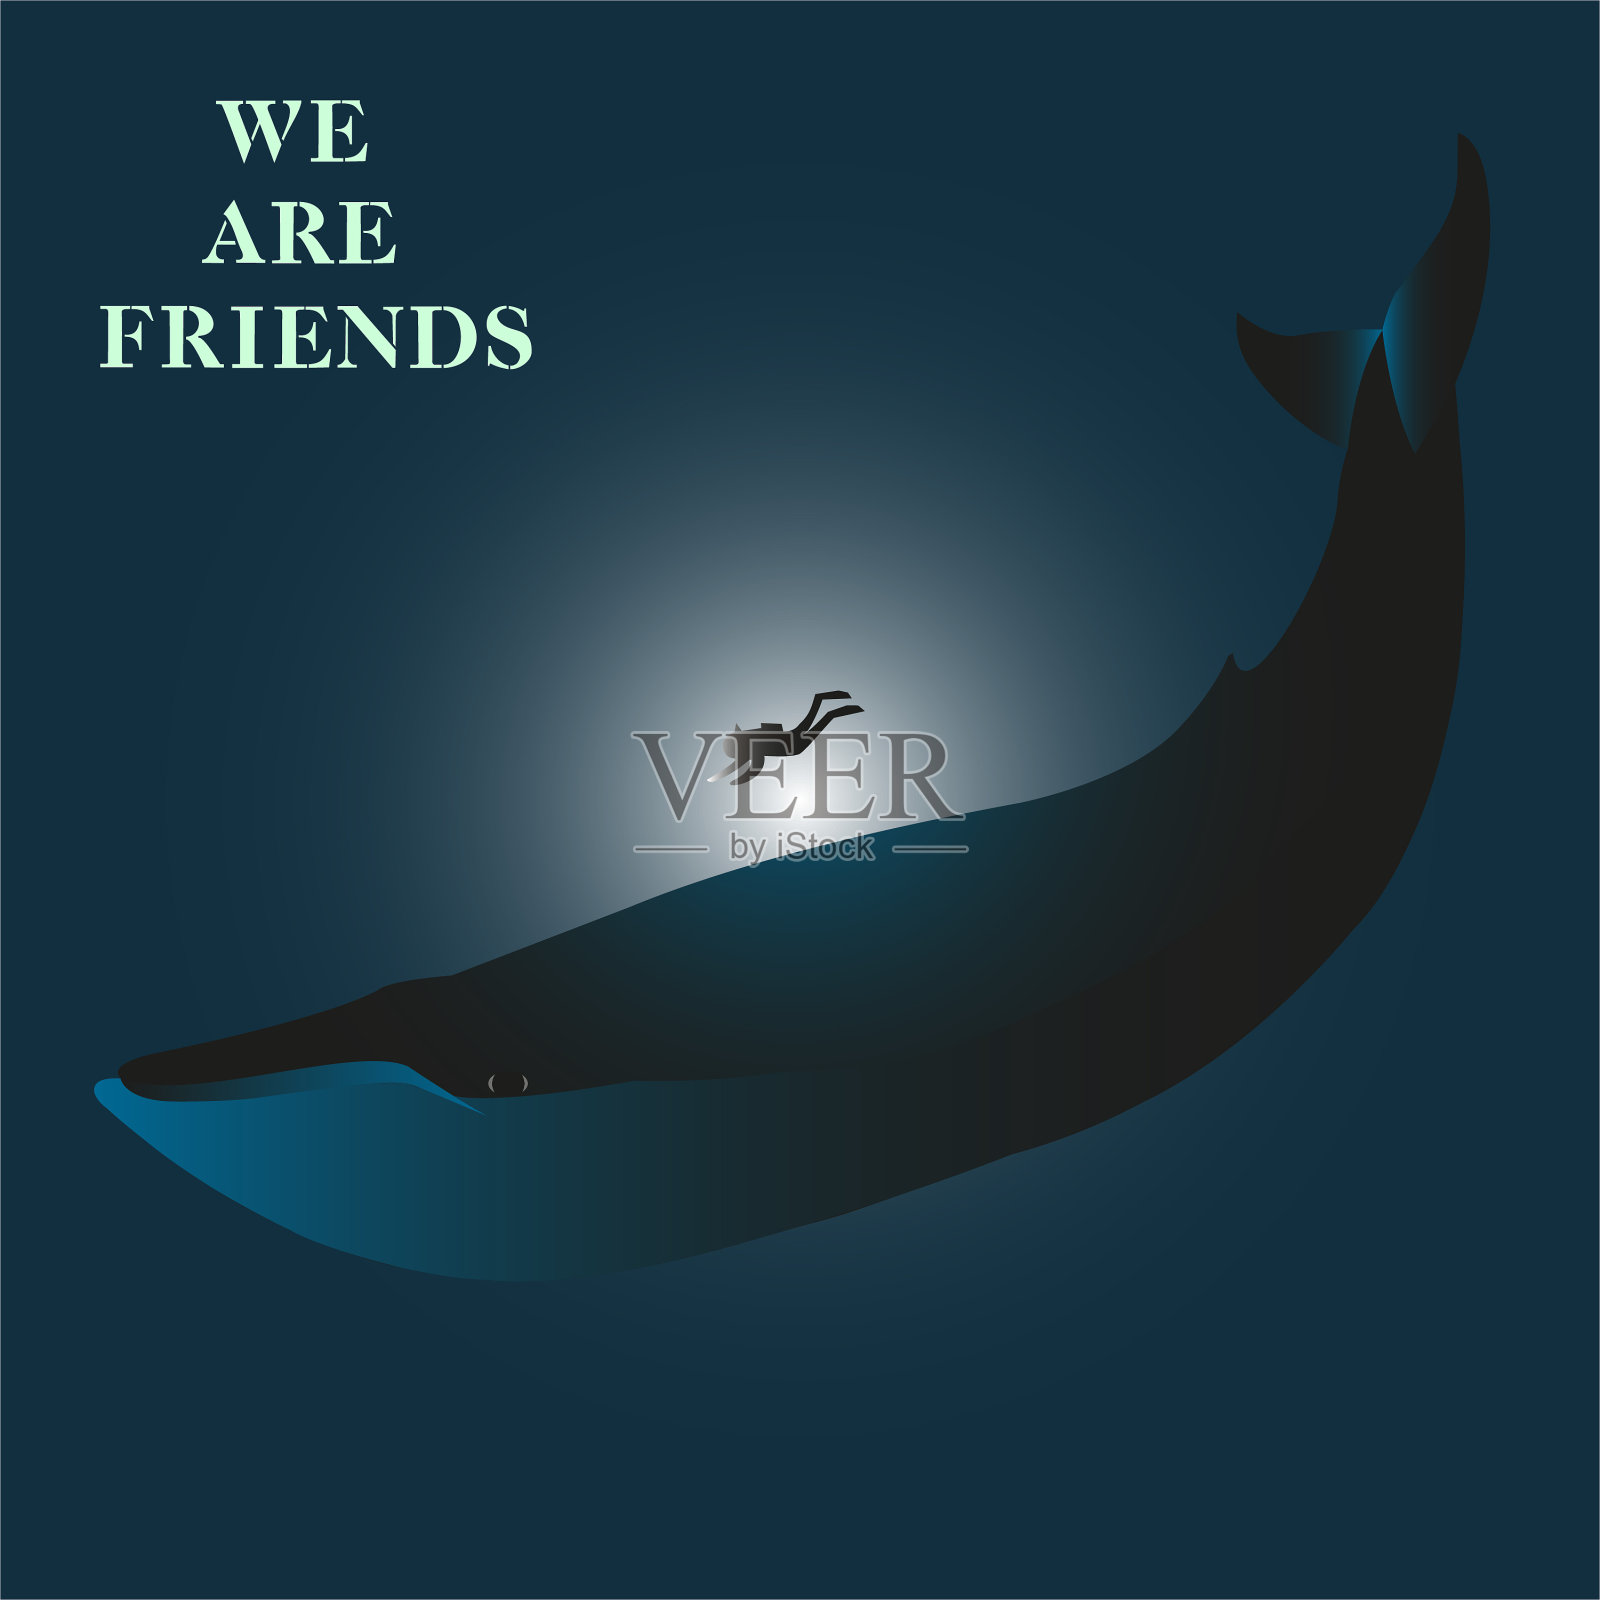 我们是朋友-现代字母。人类和蓝鲸之间的友谊。让我们和平相处。设计元素图片